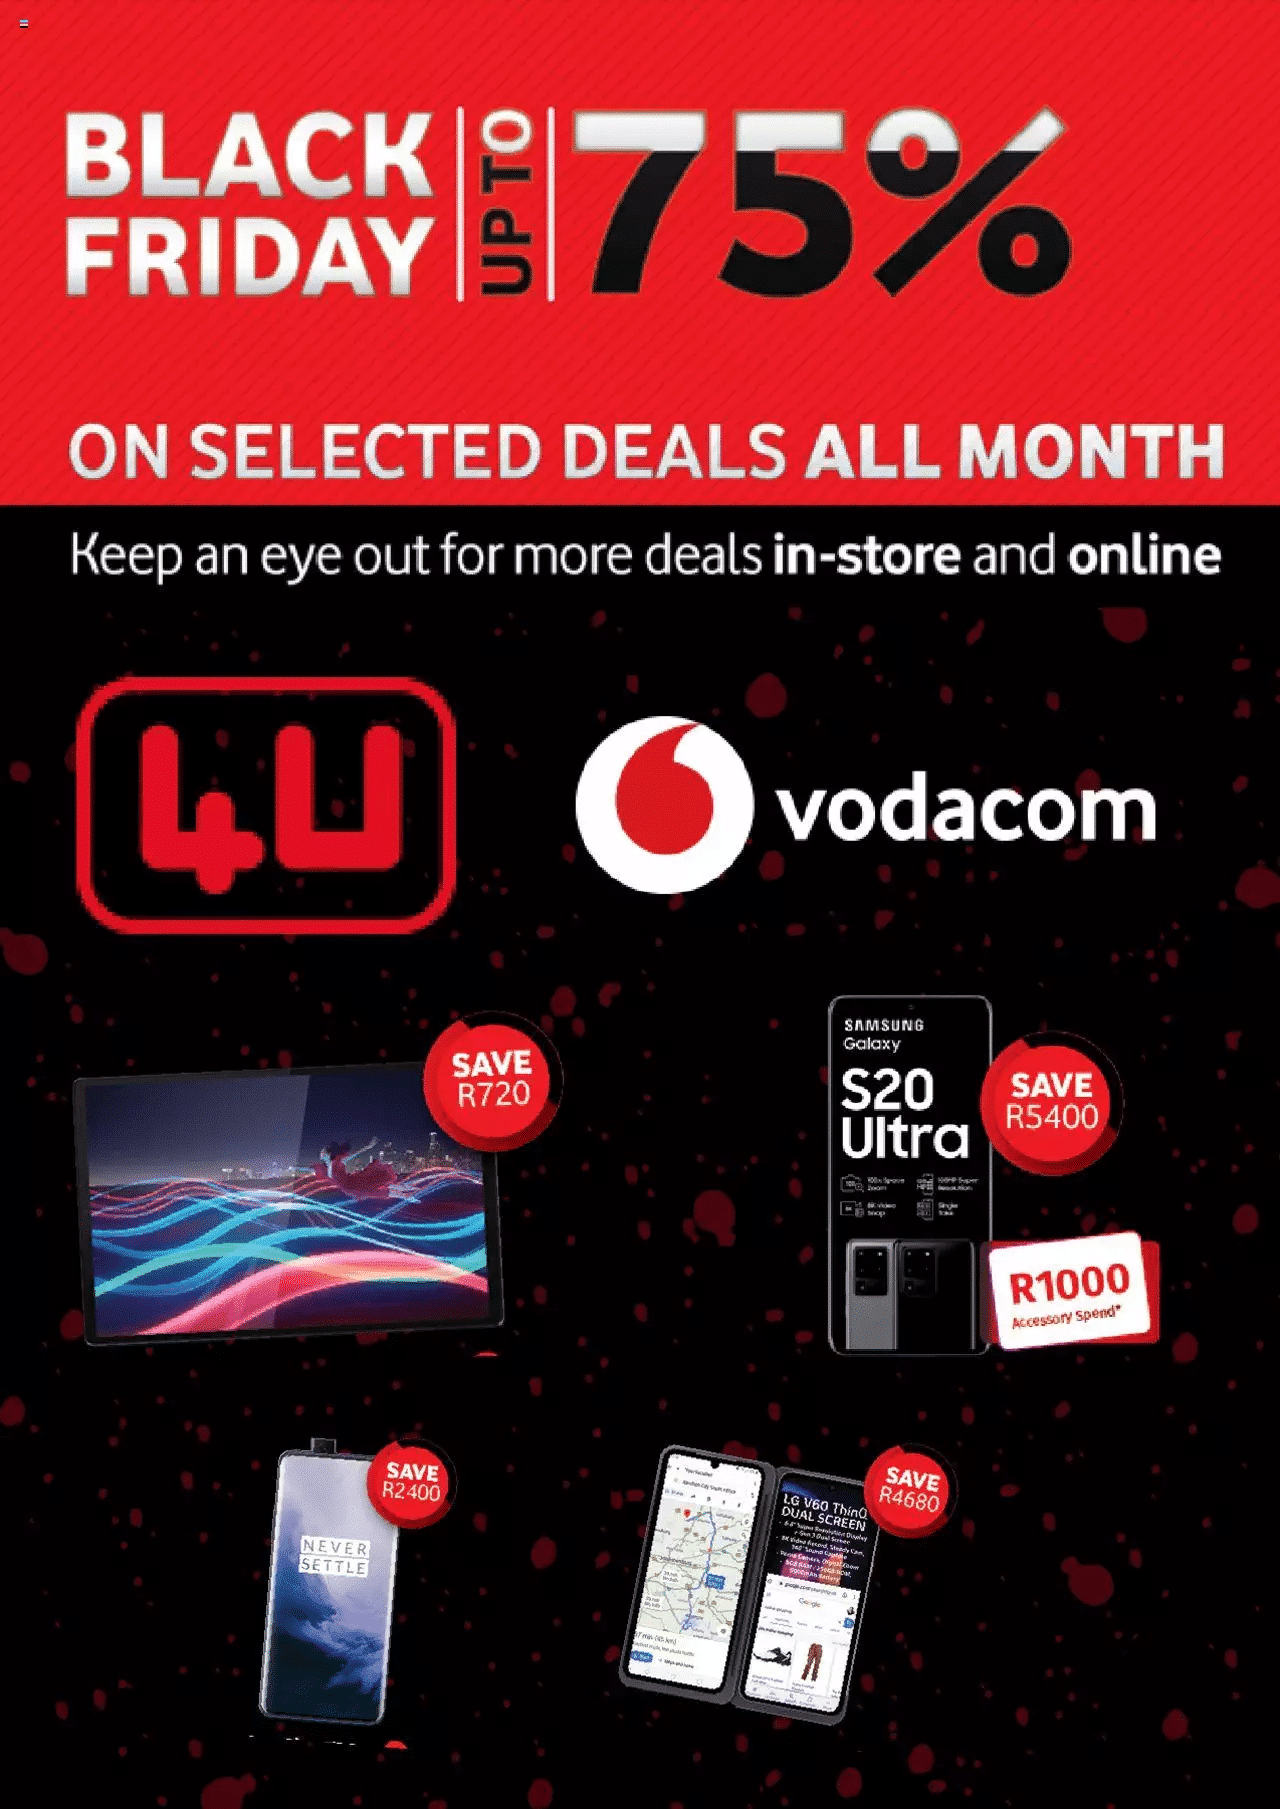 Vodacom Black Friday Deals & Specials 2021 - What Phones Deals For Black Friday